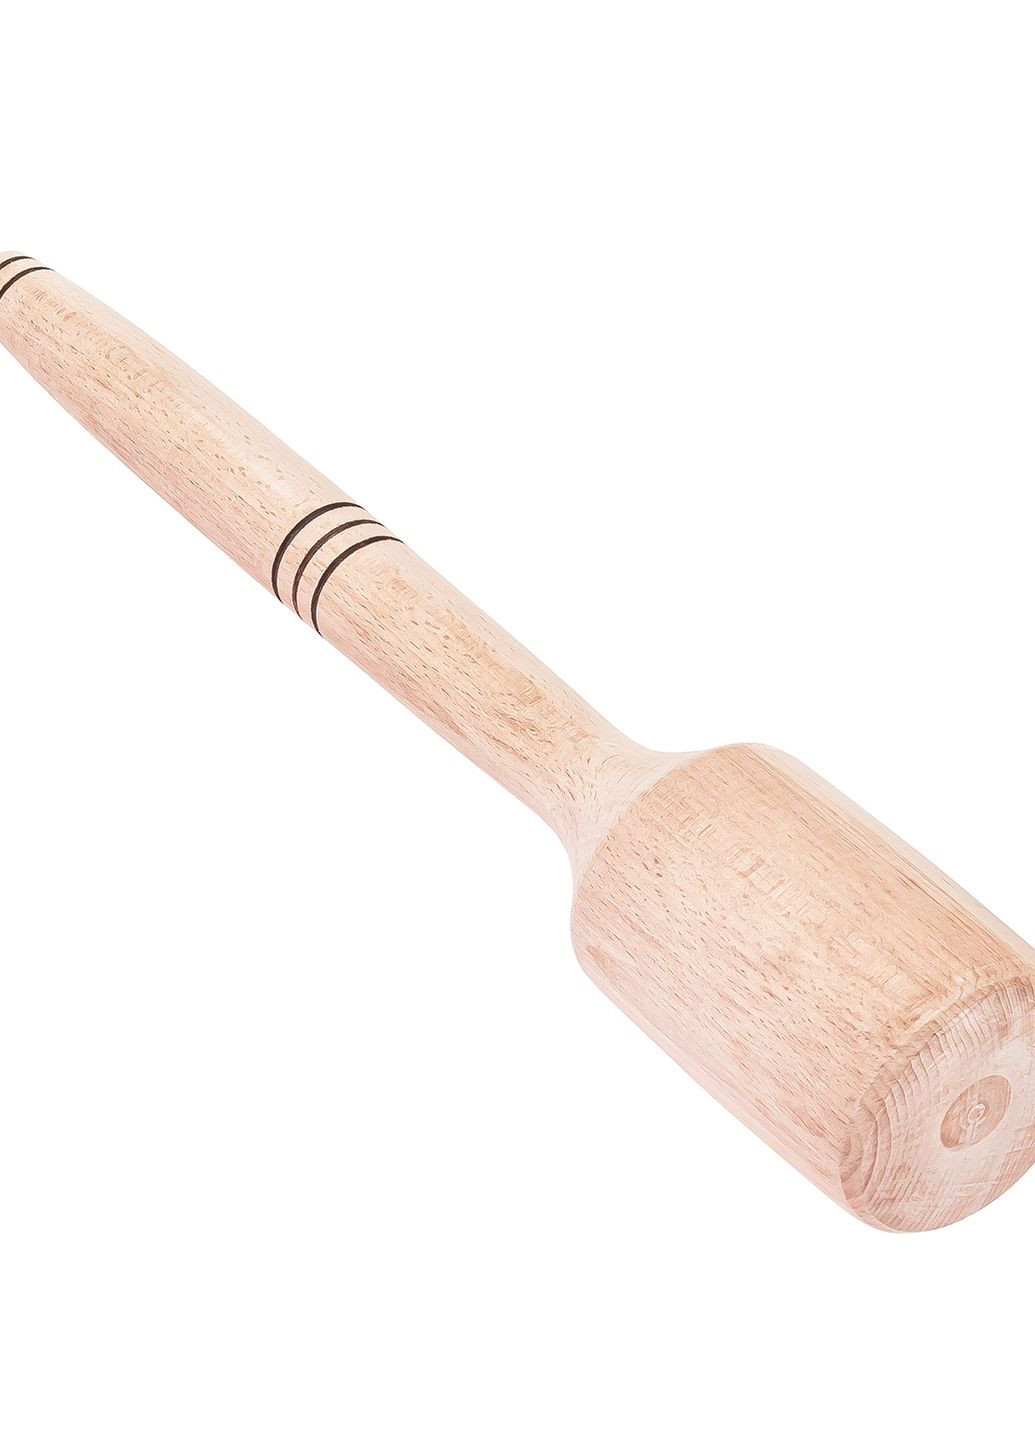 Толкушка картофелемялка фигурная средняя для картошки деревянная 30 см Woodly (274382573)